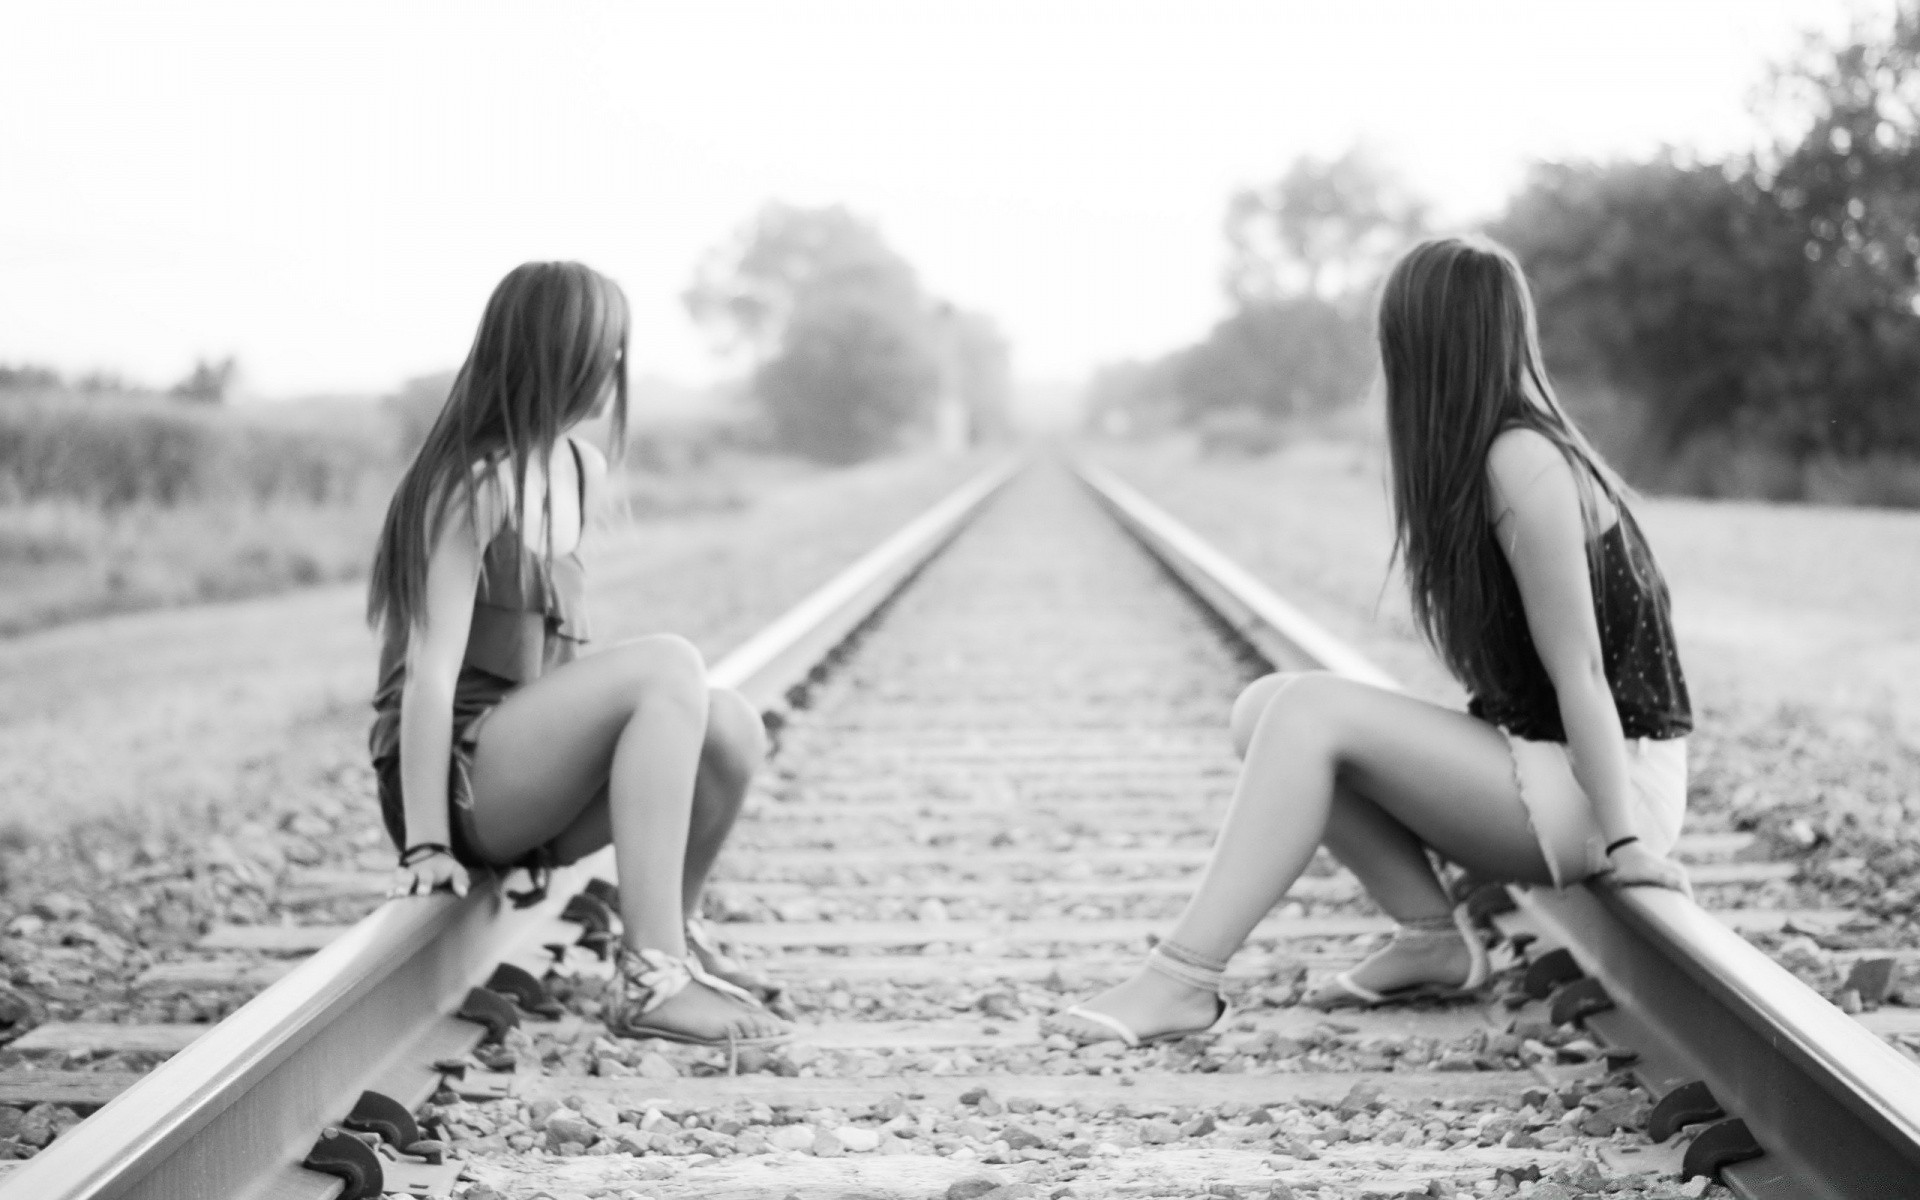 черно-белое девушка женщина путешествия монохромный лето поезд мода природа портрет модель один железнодорожный взрослый сексуальный пляж отдых брюнетка